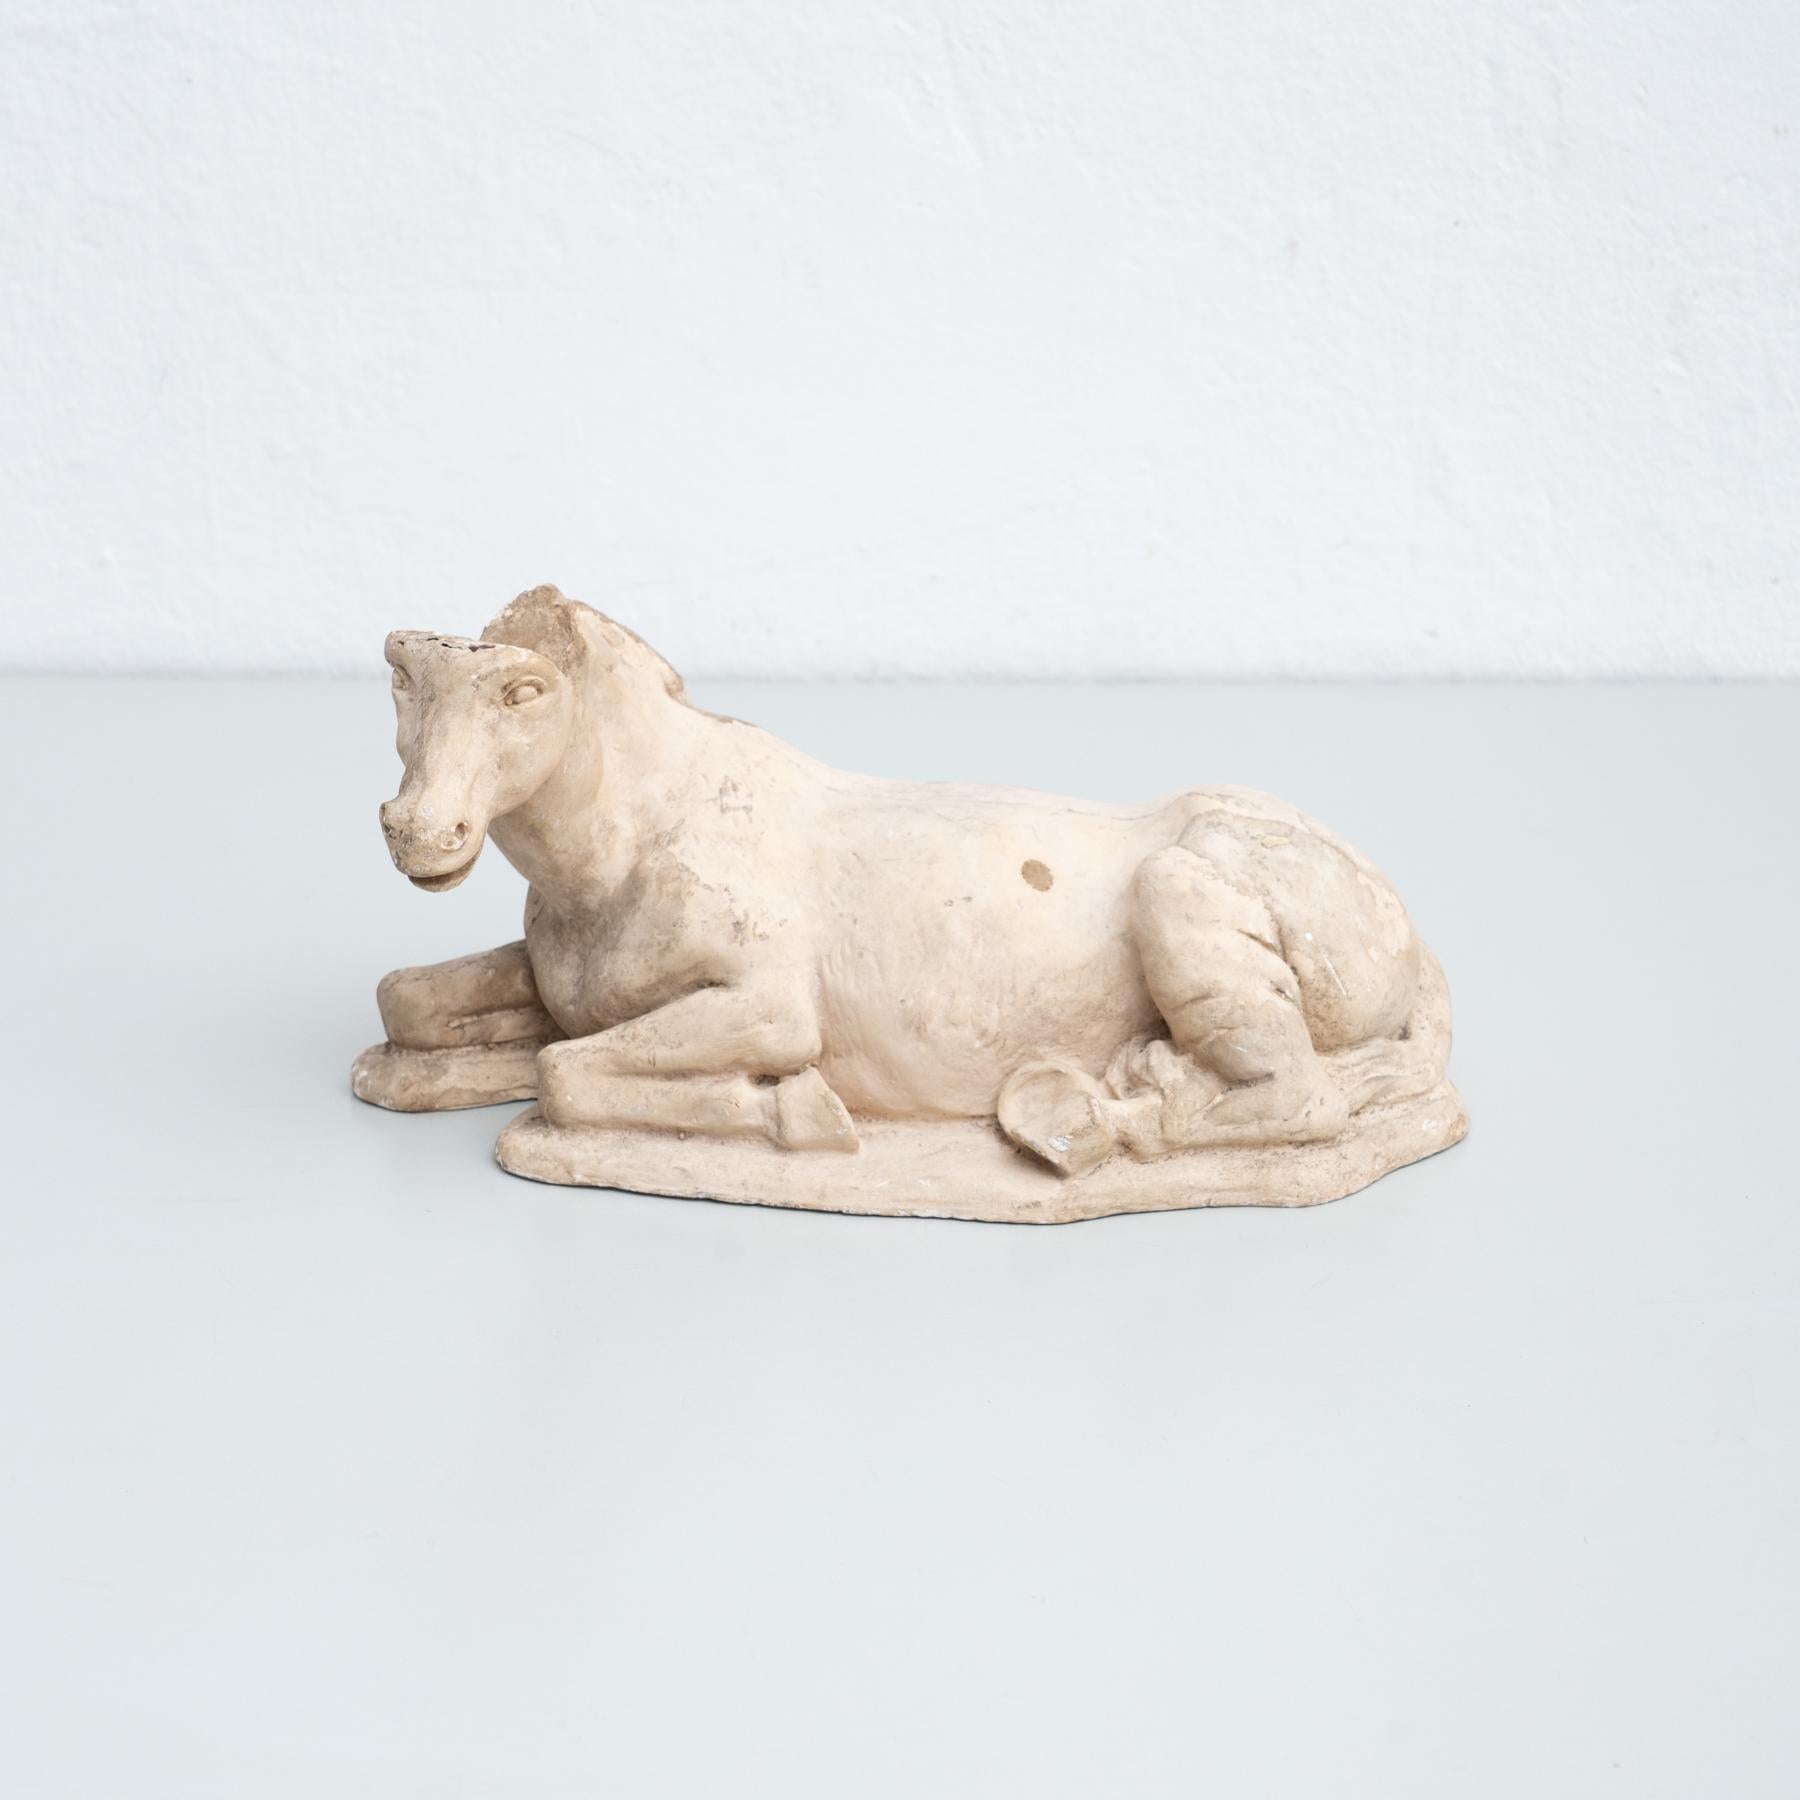 Figurine traditionnelle en plâtre représentant un cheval.

Fabriqué dans un atelier catalan traditionnel à Olot, en Espagne, vers 1950.

En état d'origine, avec une usure mineure conforme à l'âge et à l'utilisation, préservant une belle